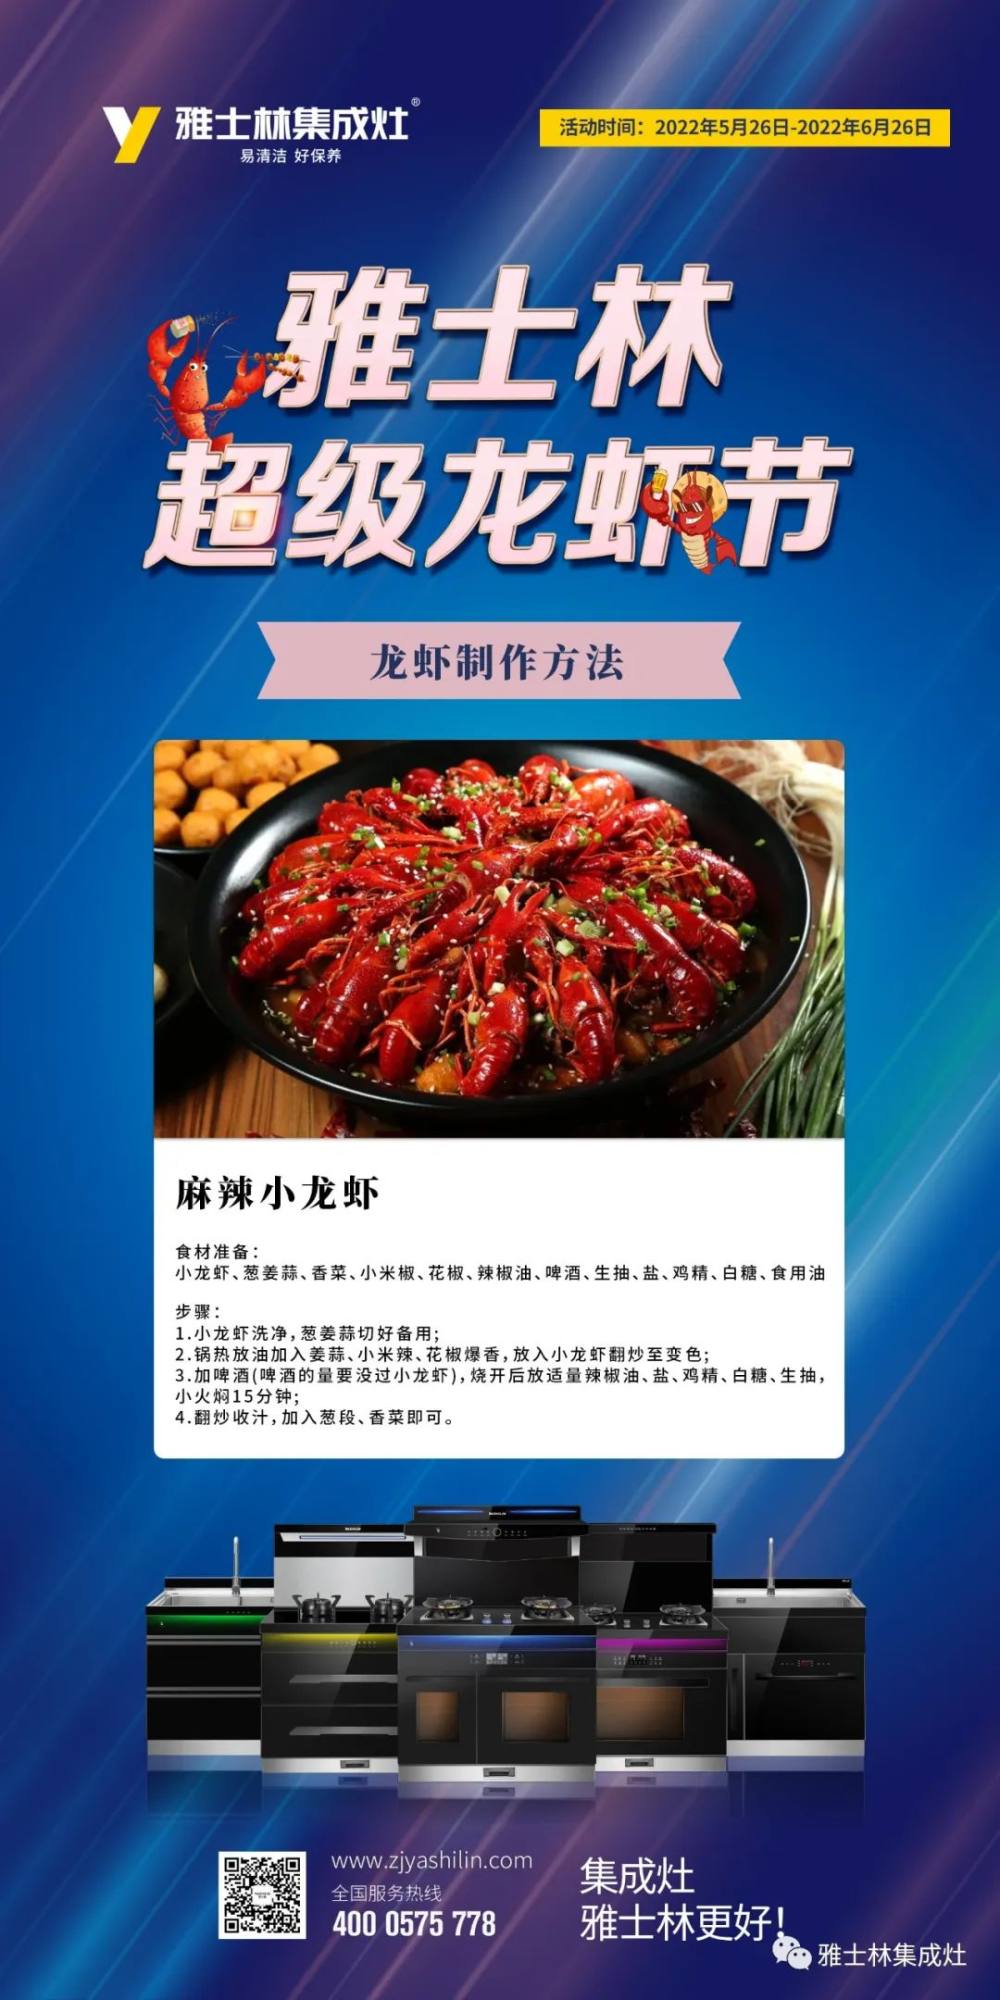 雅士林超级龙虾节之麻辣小龙虾制作方法